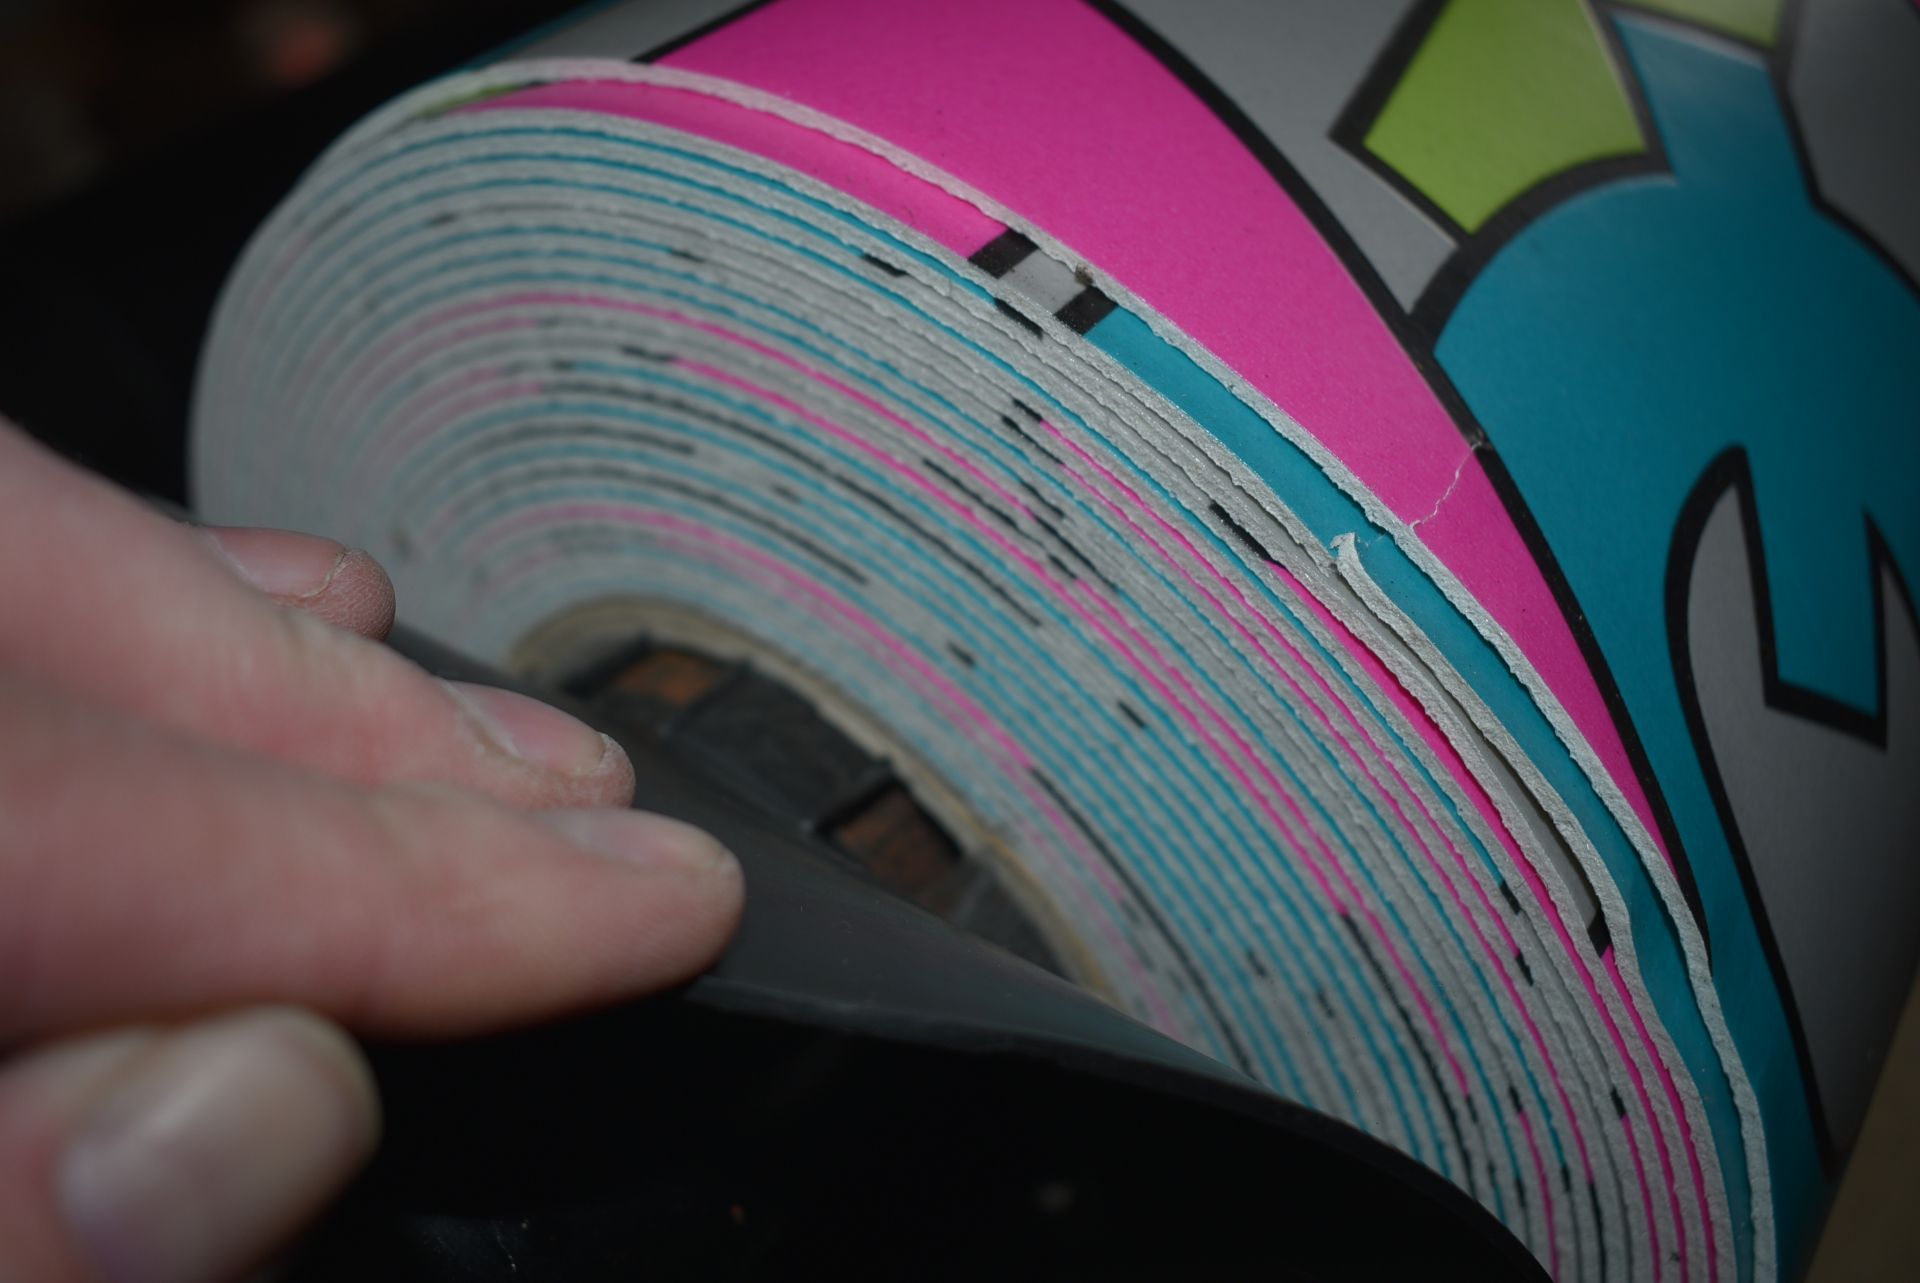 4m wide Roll of Multicolour Alphabet Vinyl Flooring - Bild 2 aus 2